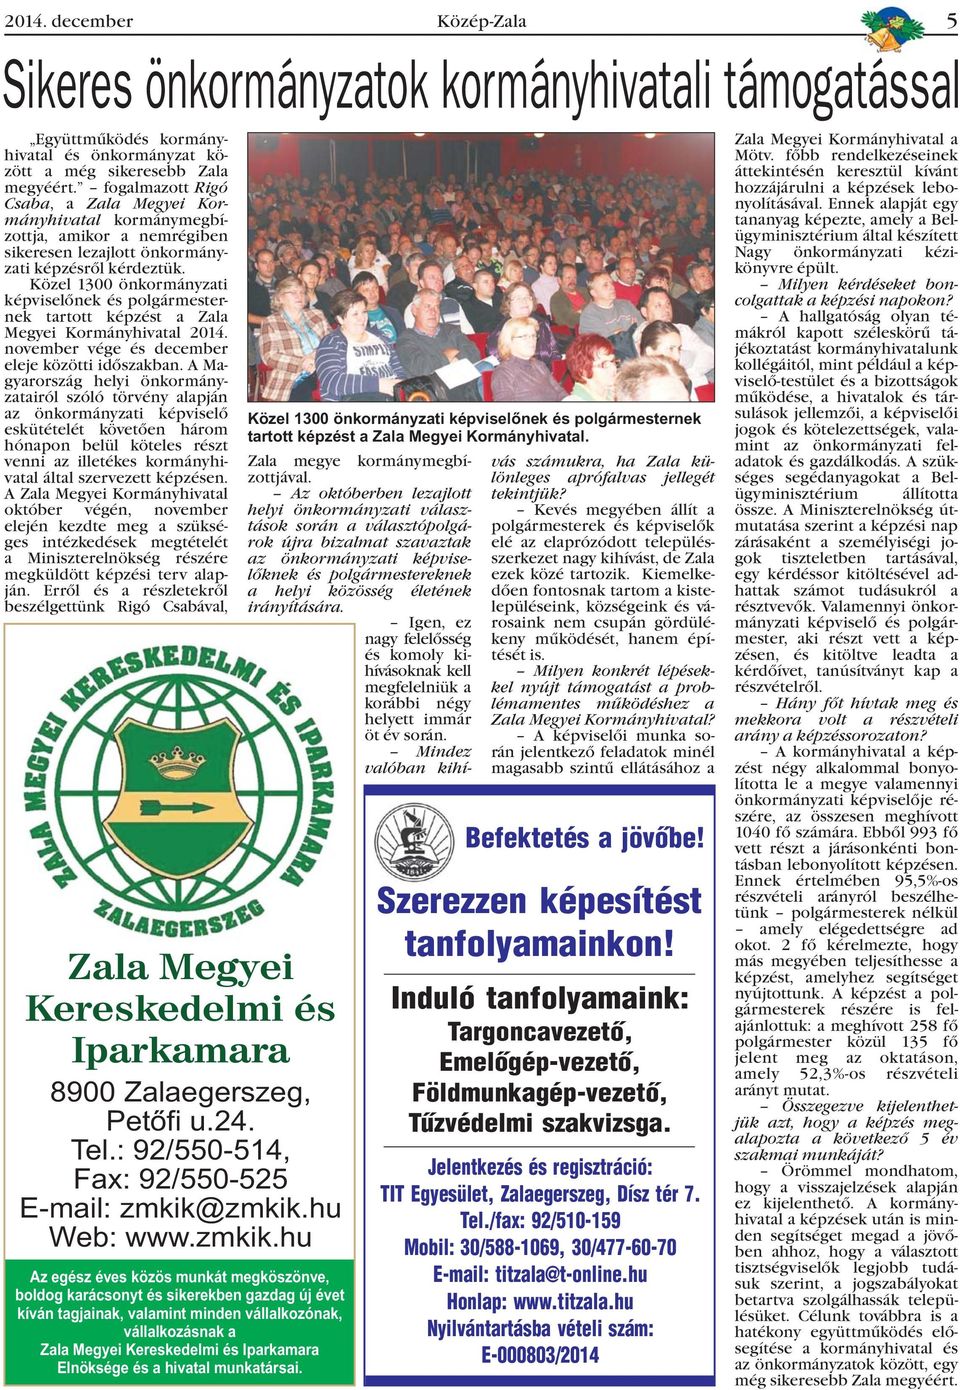 Közel 1300 önkormányzati képviselõnek és polgármesternek tartott képzést a Zala Megyei Kormányhivatal 2014. november vége és december eleje közötti idõszakban.